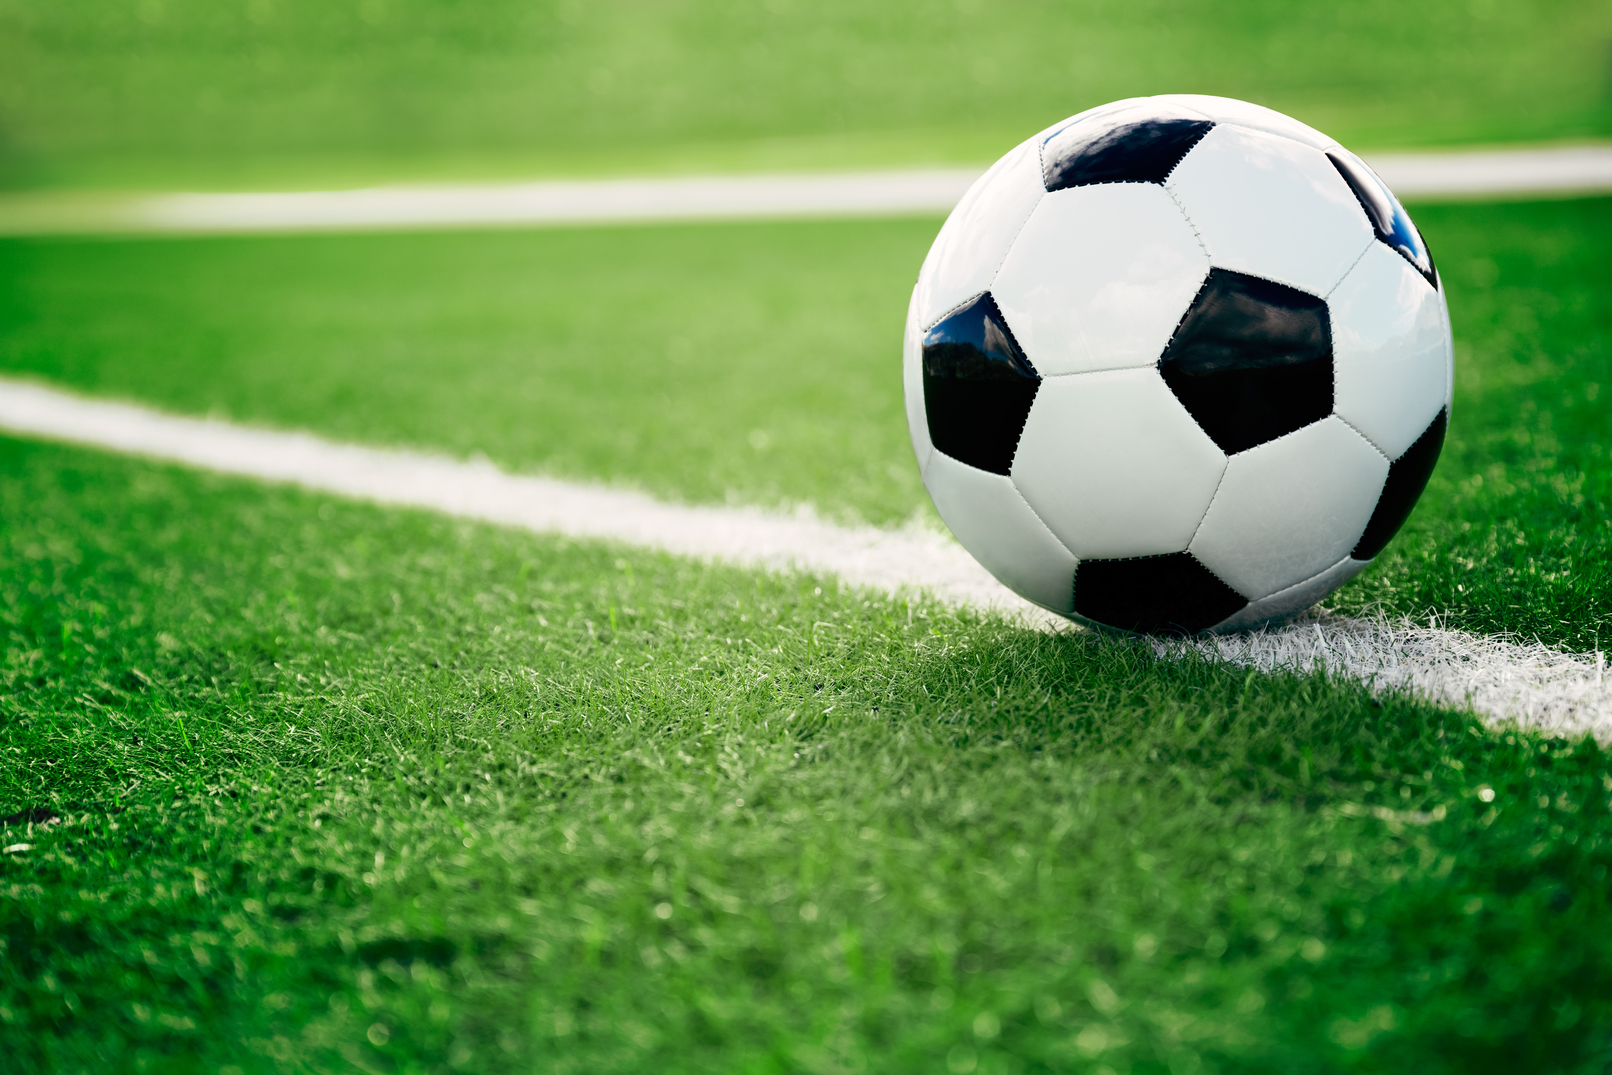 U.S. Women’s Soccer Team Files Gender Discrimination Lawsuit Against U.S. Soccer